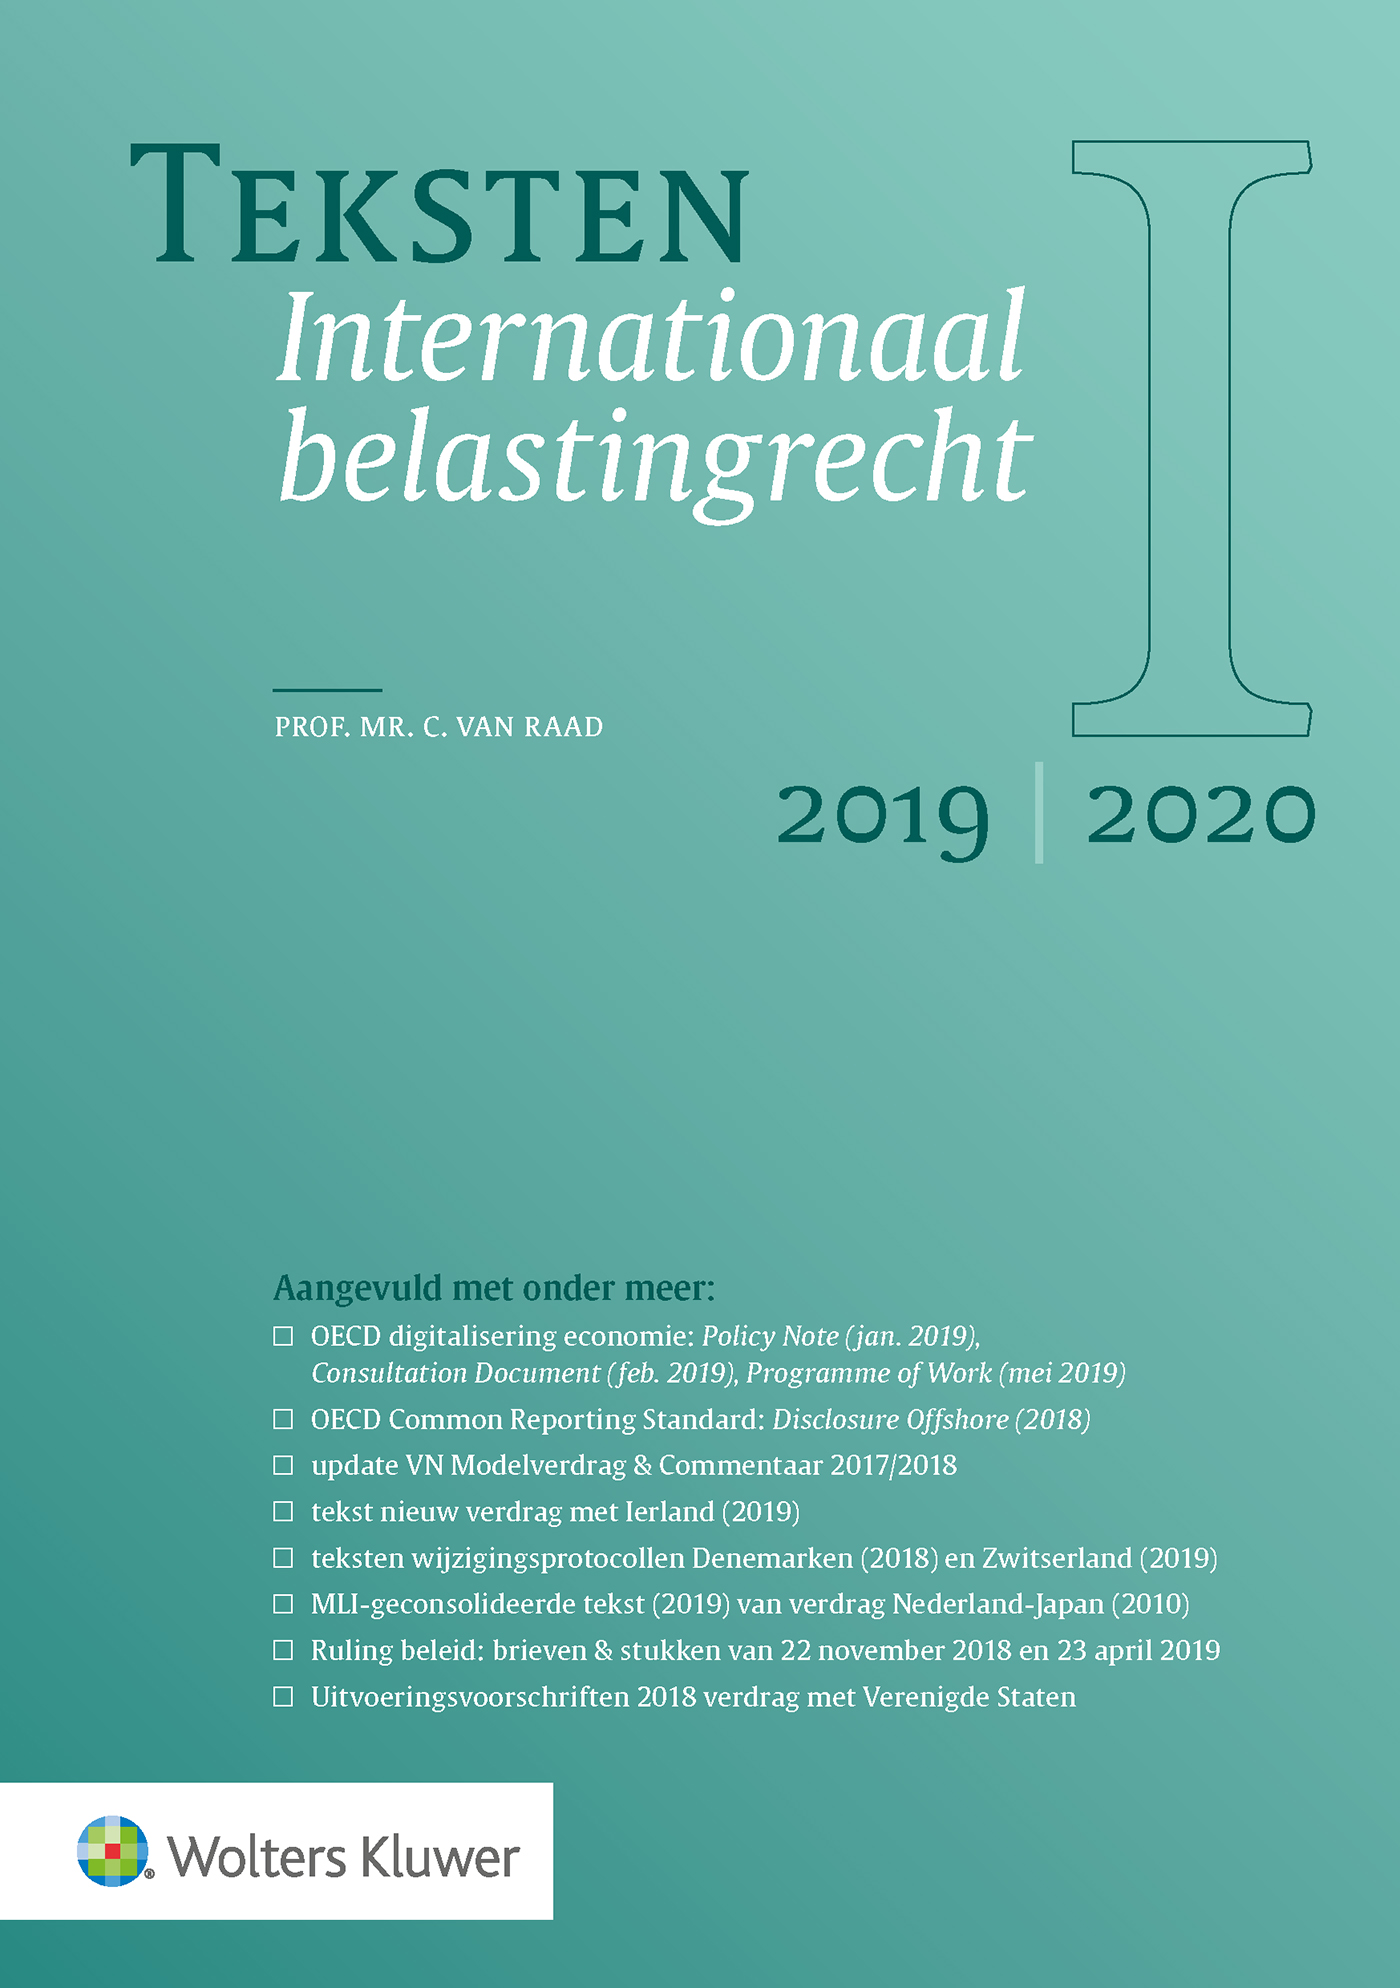 Teksten Internationaal belastingrecht 2019/2020